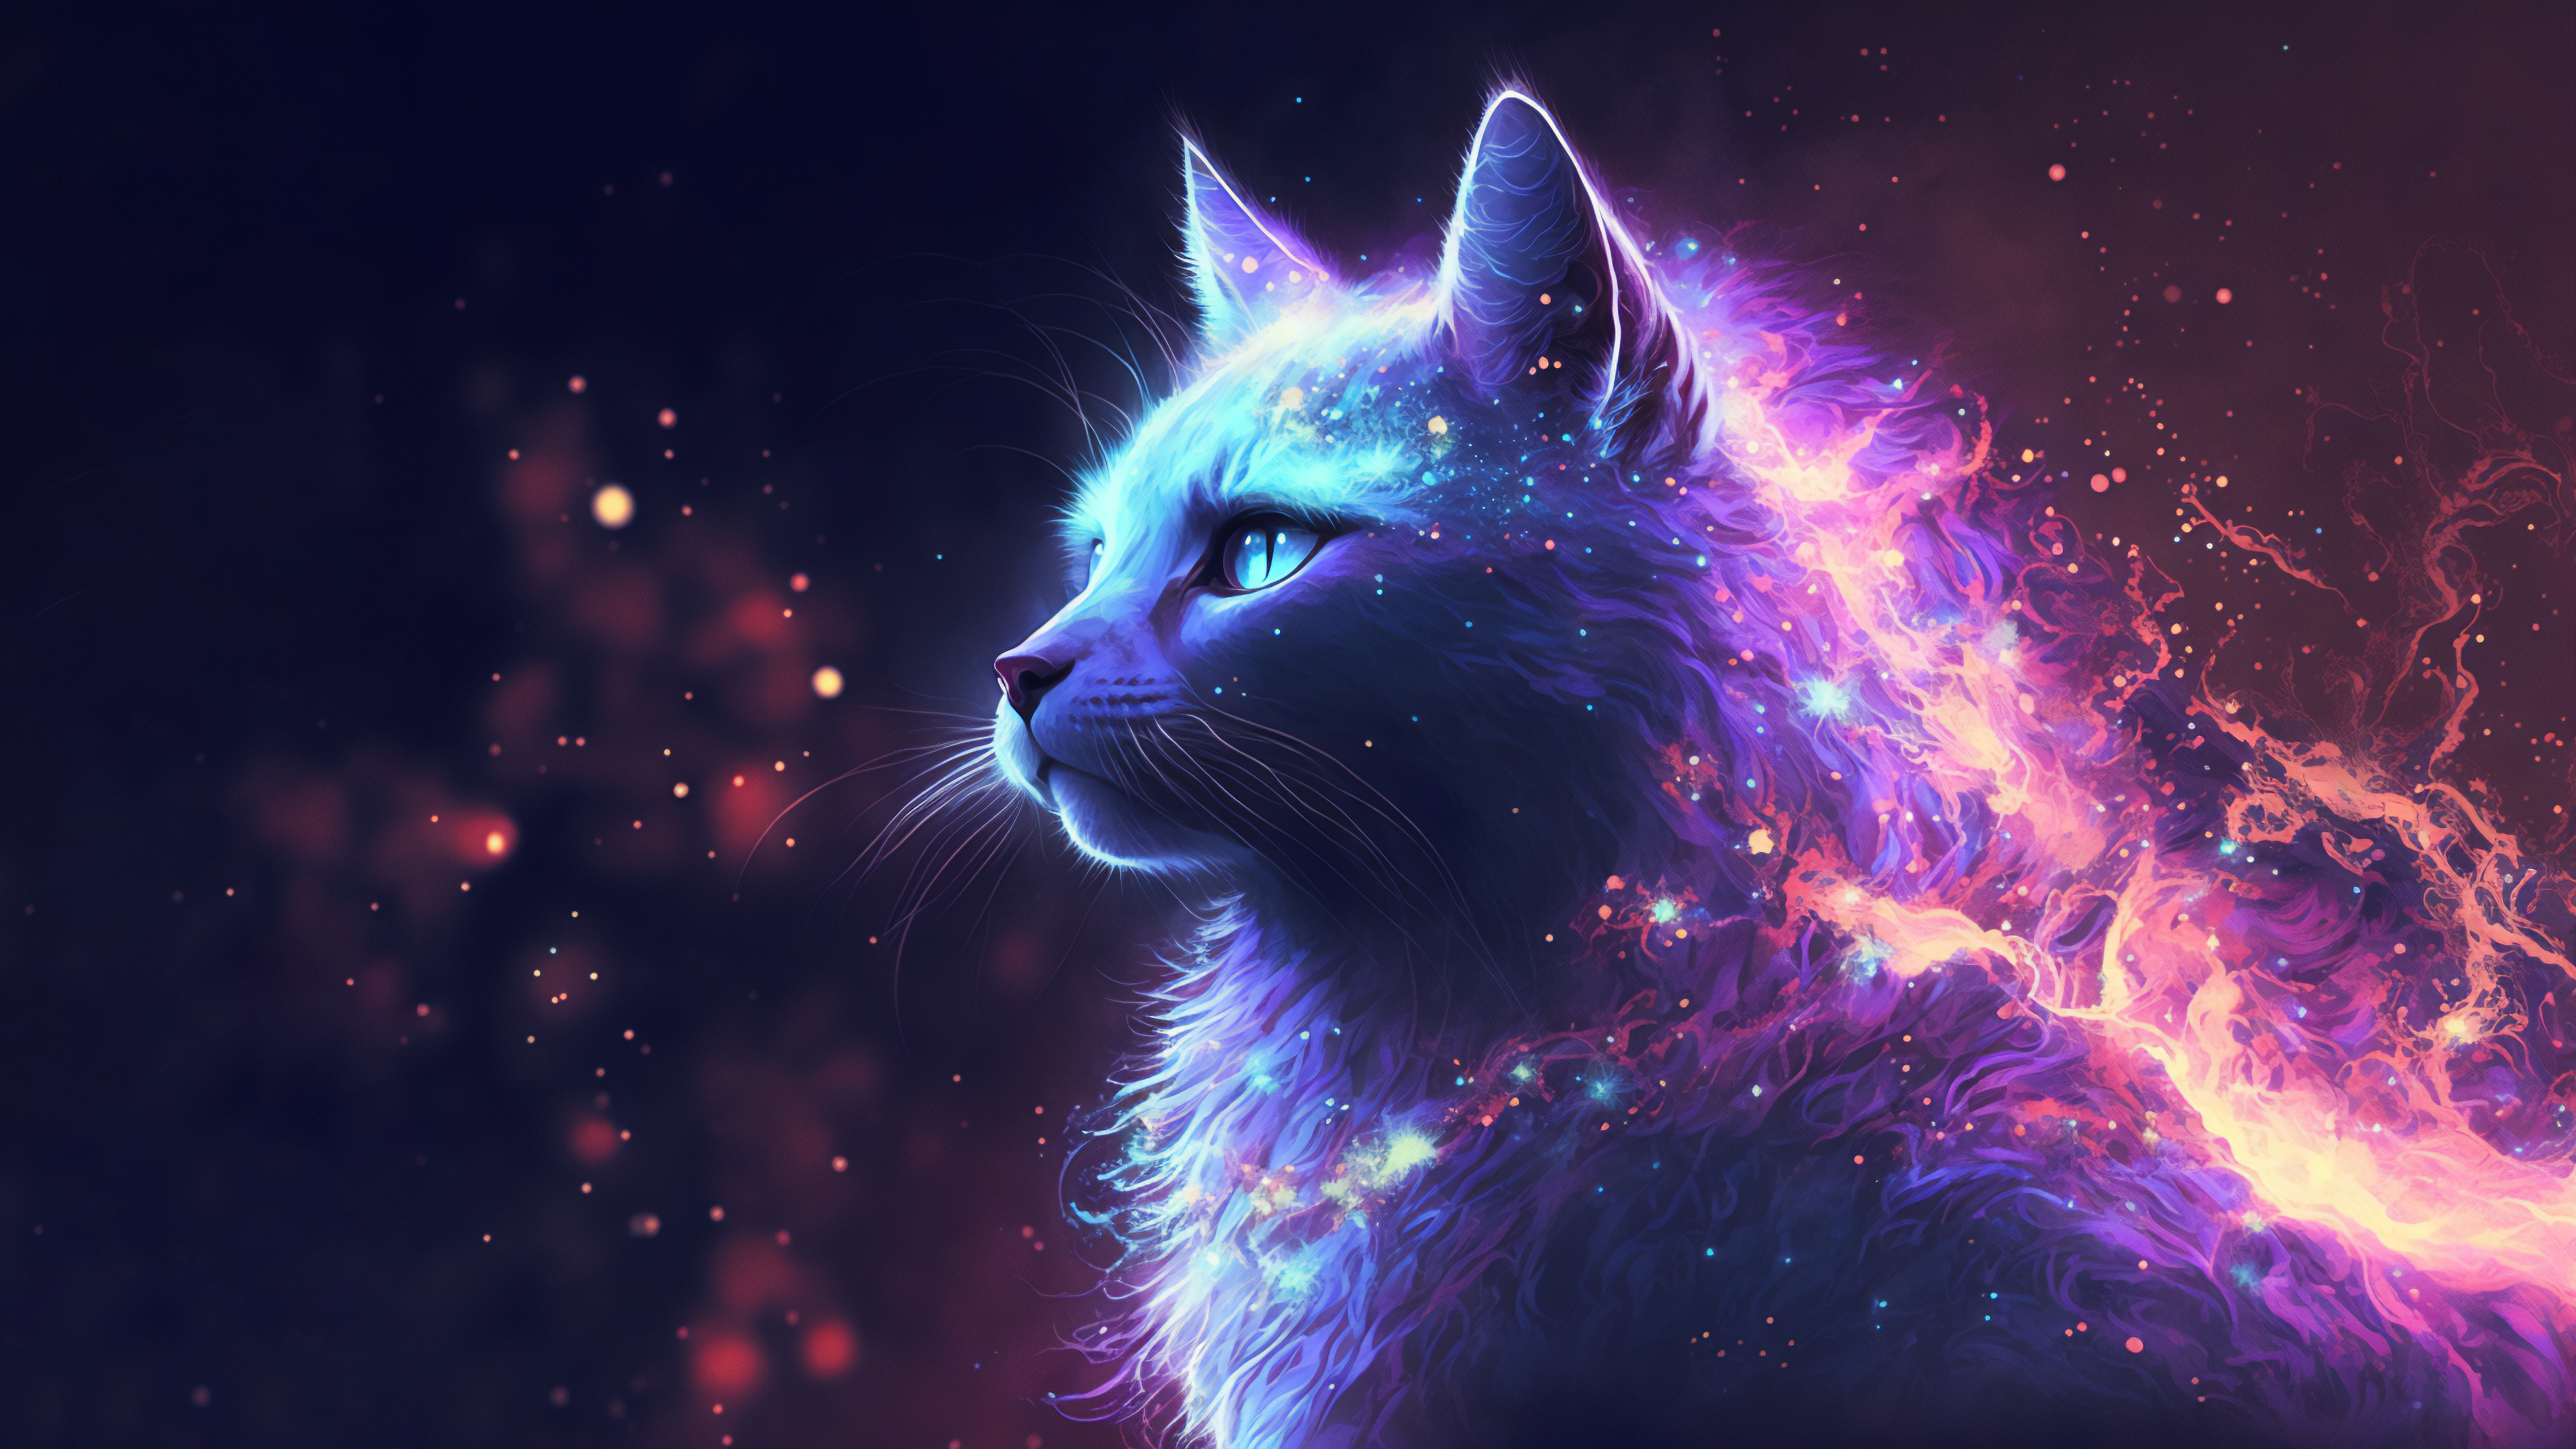 General 3641x2048 AI art illustration cats space universe nebula stars